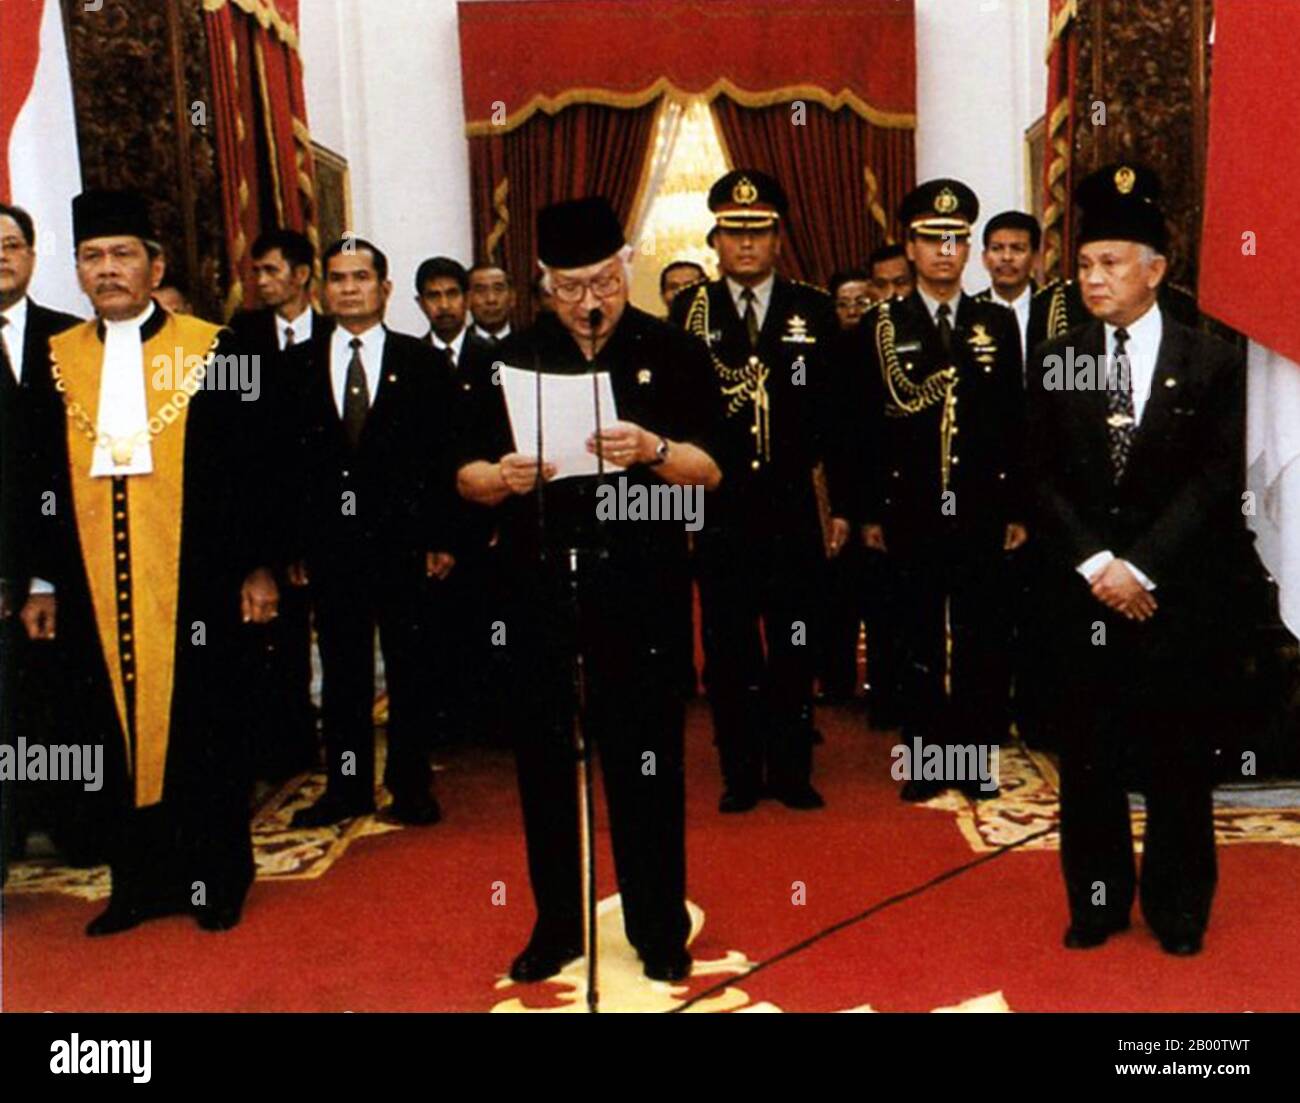 Indonésie: Suharto (1921-2008), deuxième Président de l'Indonésie (1967-1998). Démission, Palais Merdeka, 21 mai 1998. Suharto (8 juin 1921—27 janvier 2008) a été le deuxième Président de l'Indonésie, qui a occupé son poste pendant près de 32 ans, de 1967 à sa démission en 1998. Dans la littérature et les médias indonésiens, il est souvent appelé Pak Harto. Fils de Yogyakarta famers, Suharto s'est joint à la lutte pour l'indépendance des Hollandais en tant que jeune homme. S'élevant au rang de général de l'armée indonésienne, Suharto a aidé à mener une purge anti-communiste en 1965. Banque D'Images